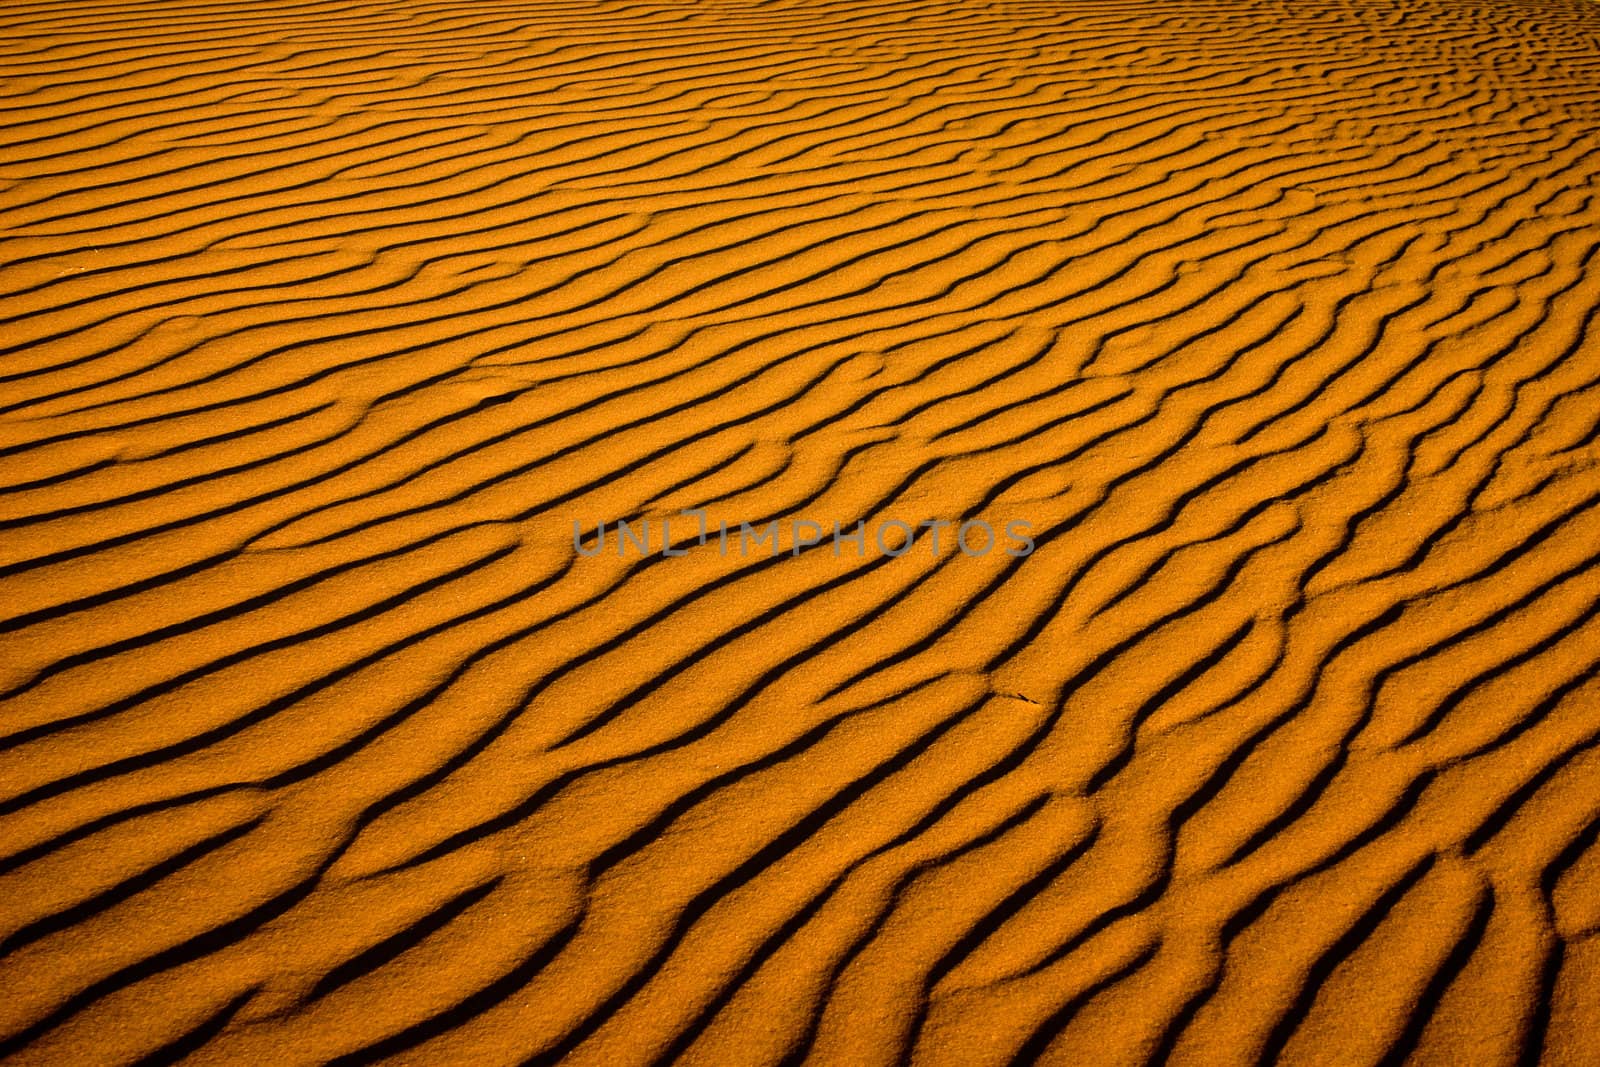 Ripples of sand in Sossusvlei, Namib Desert, Namibia